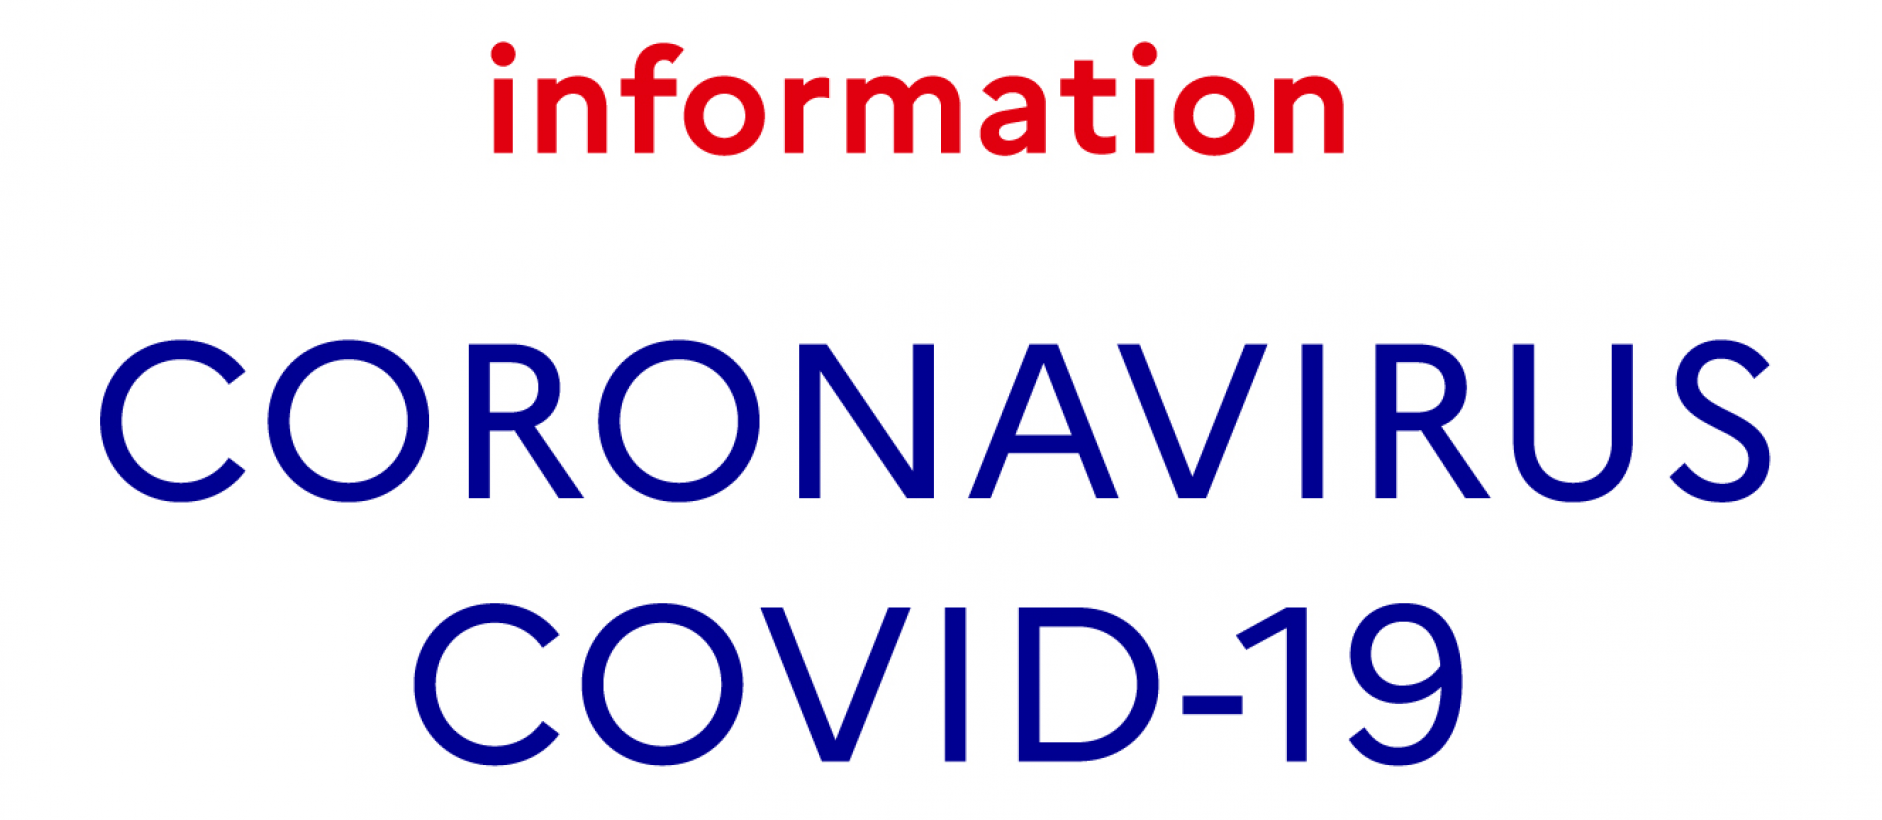 Information-coronavirus.png